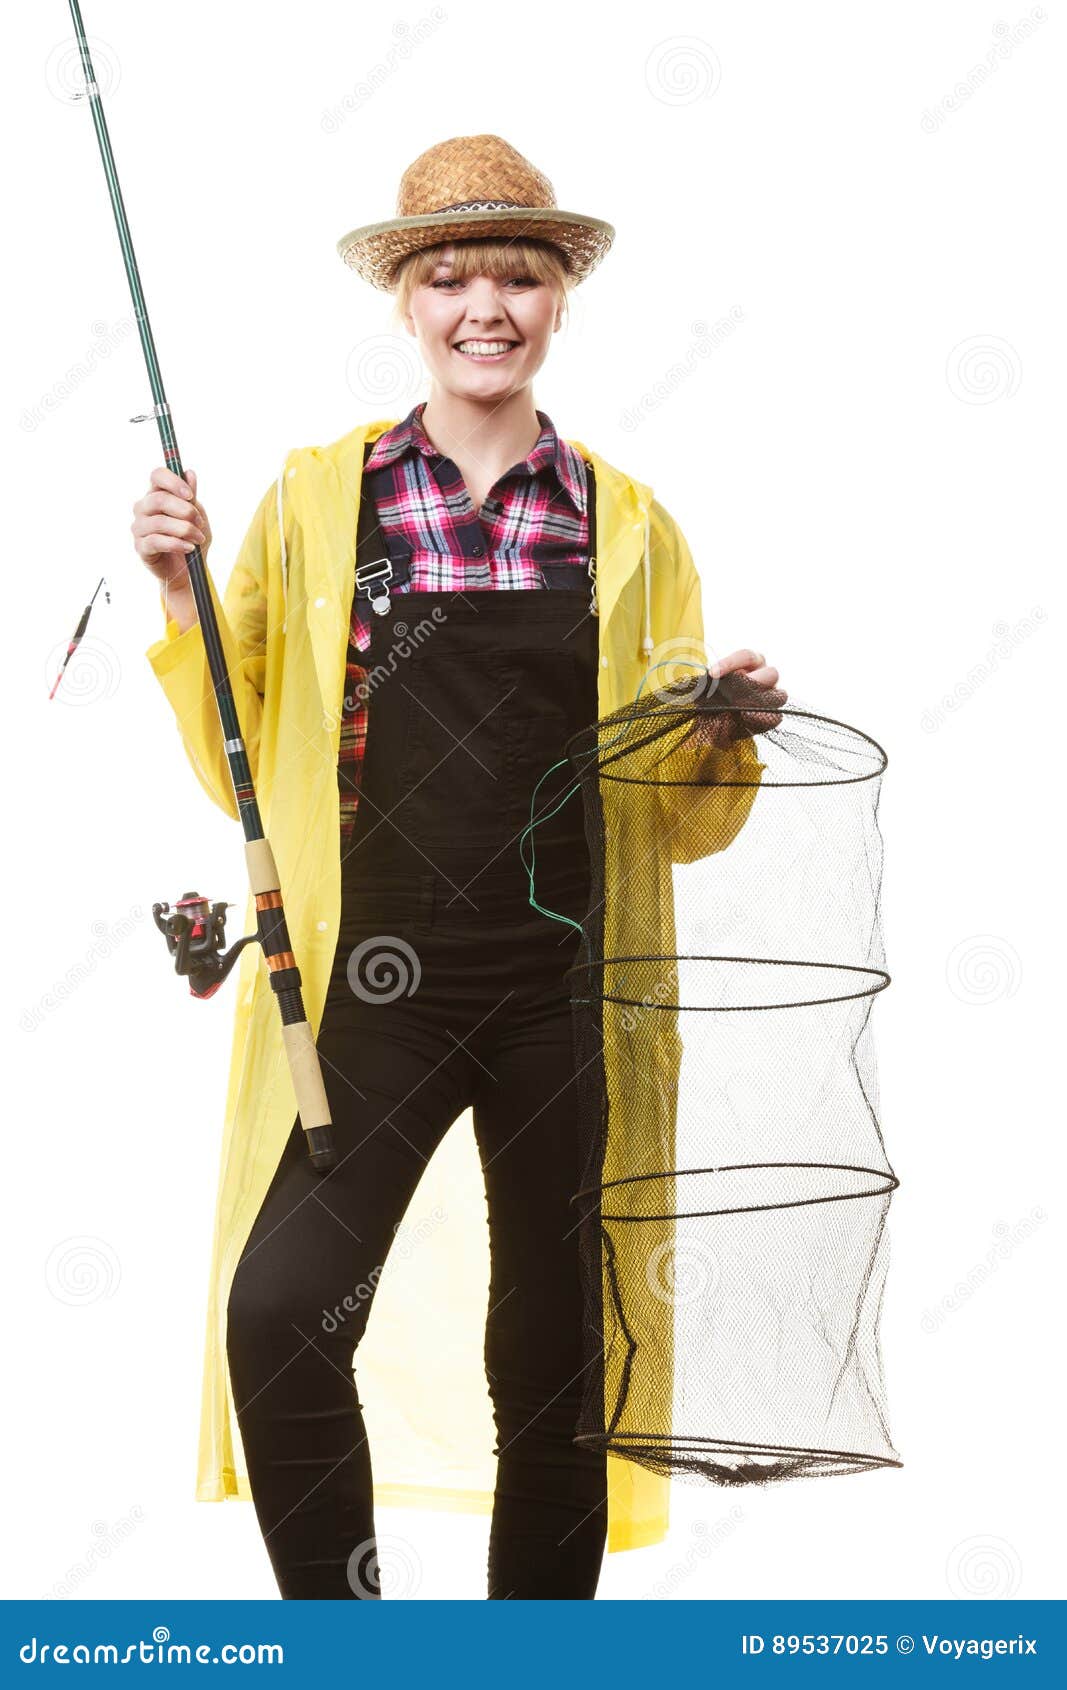 拿着钓鱼竿和keepnet的愉快的妇女. 转动，渔，快乐的女渔翁概念 拿着钓鱼竿的黄色雨衣的愉快的获得妇女和的keepnet乐趣